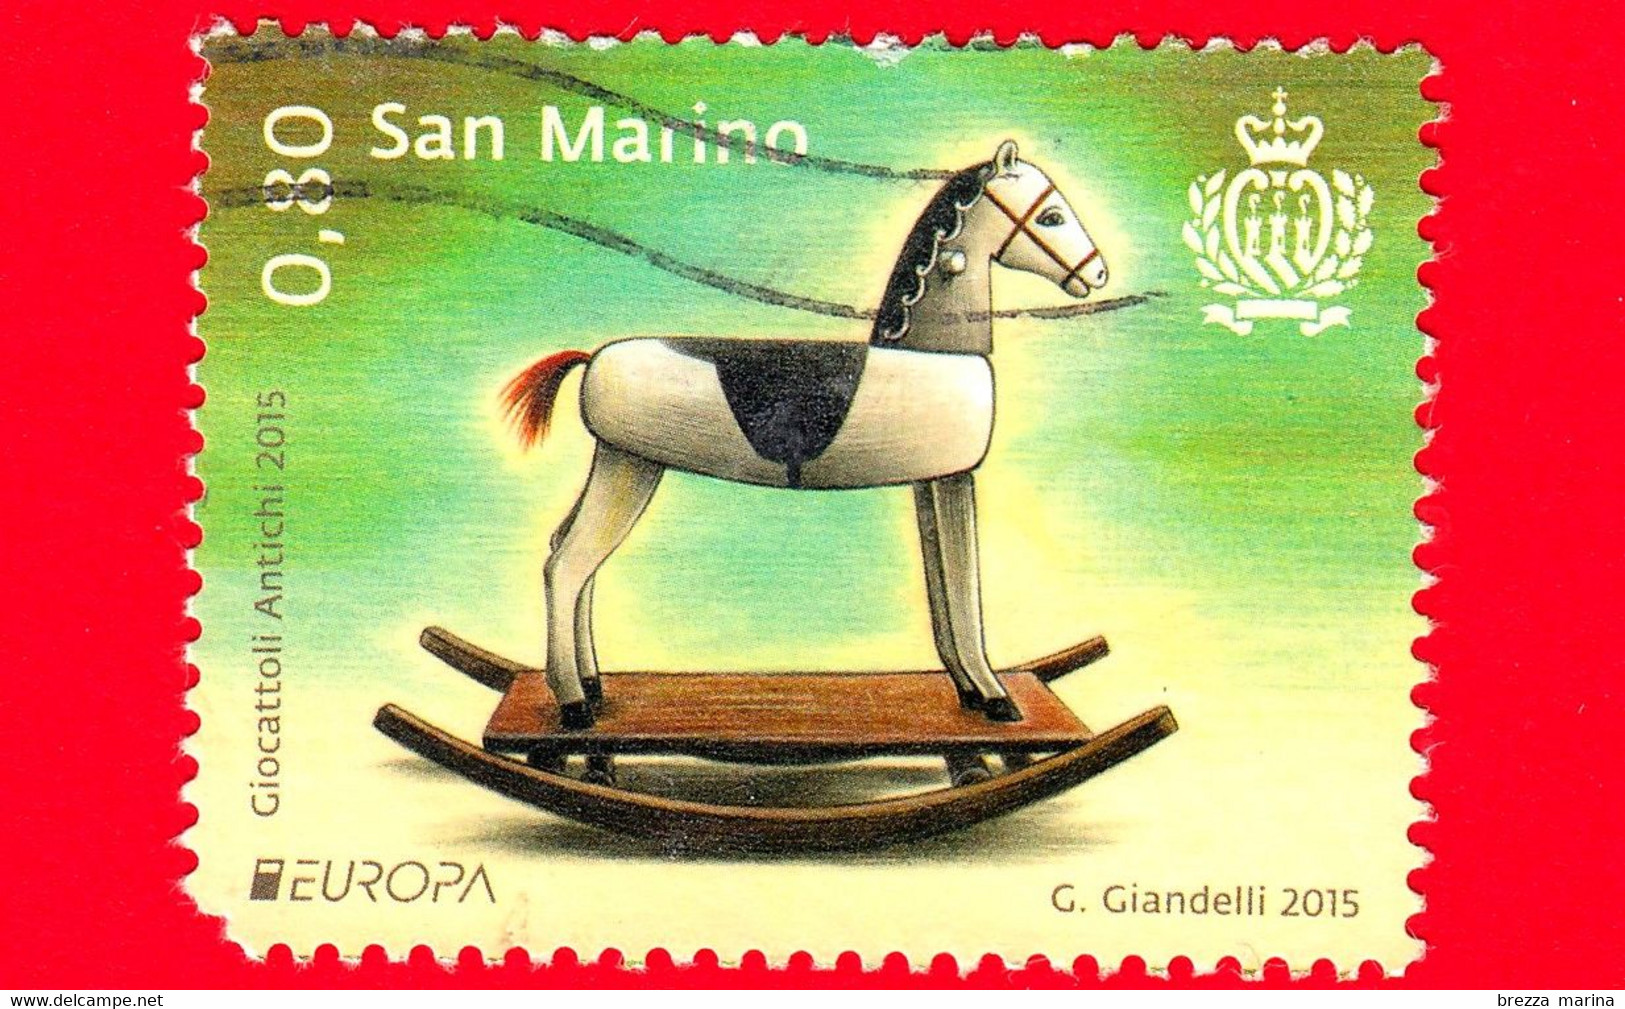 SAN MARINO - Usato - 2015 - Europa - Antichi Giocattoli - Cavallo A Dondolo  - 0.80 - Vedi ... - Usati